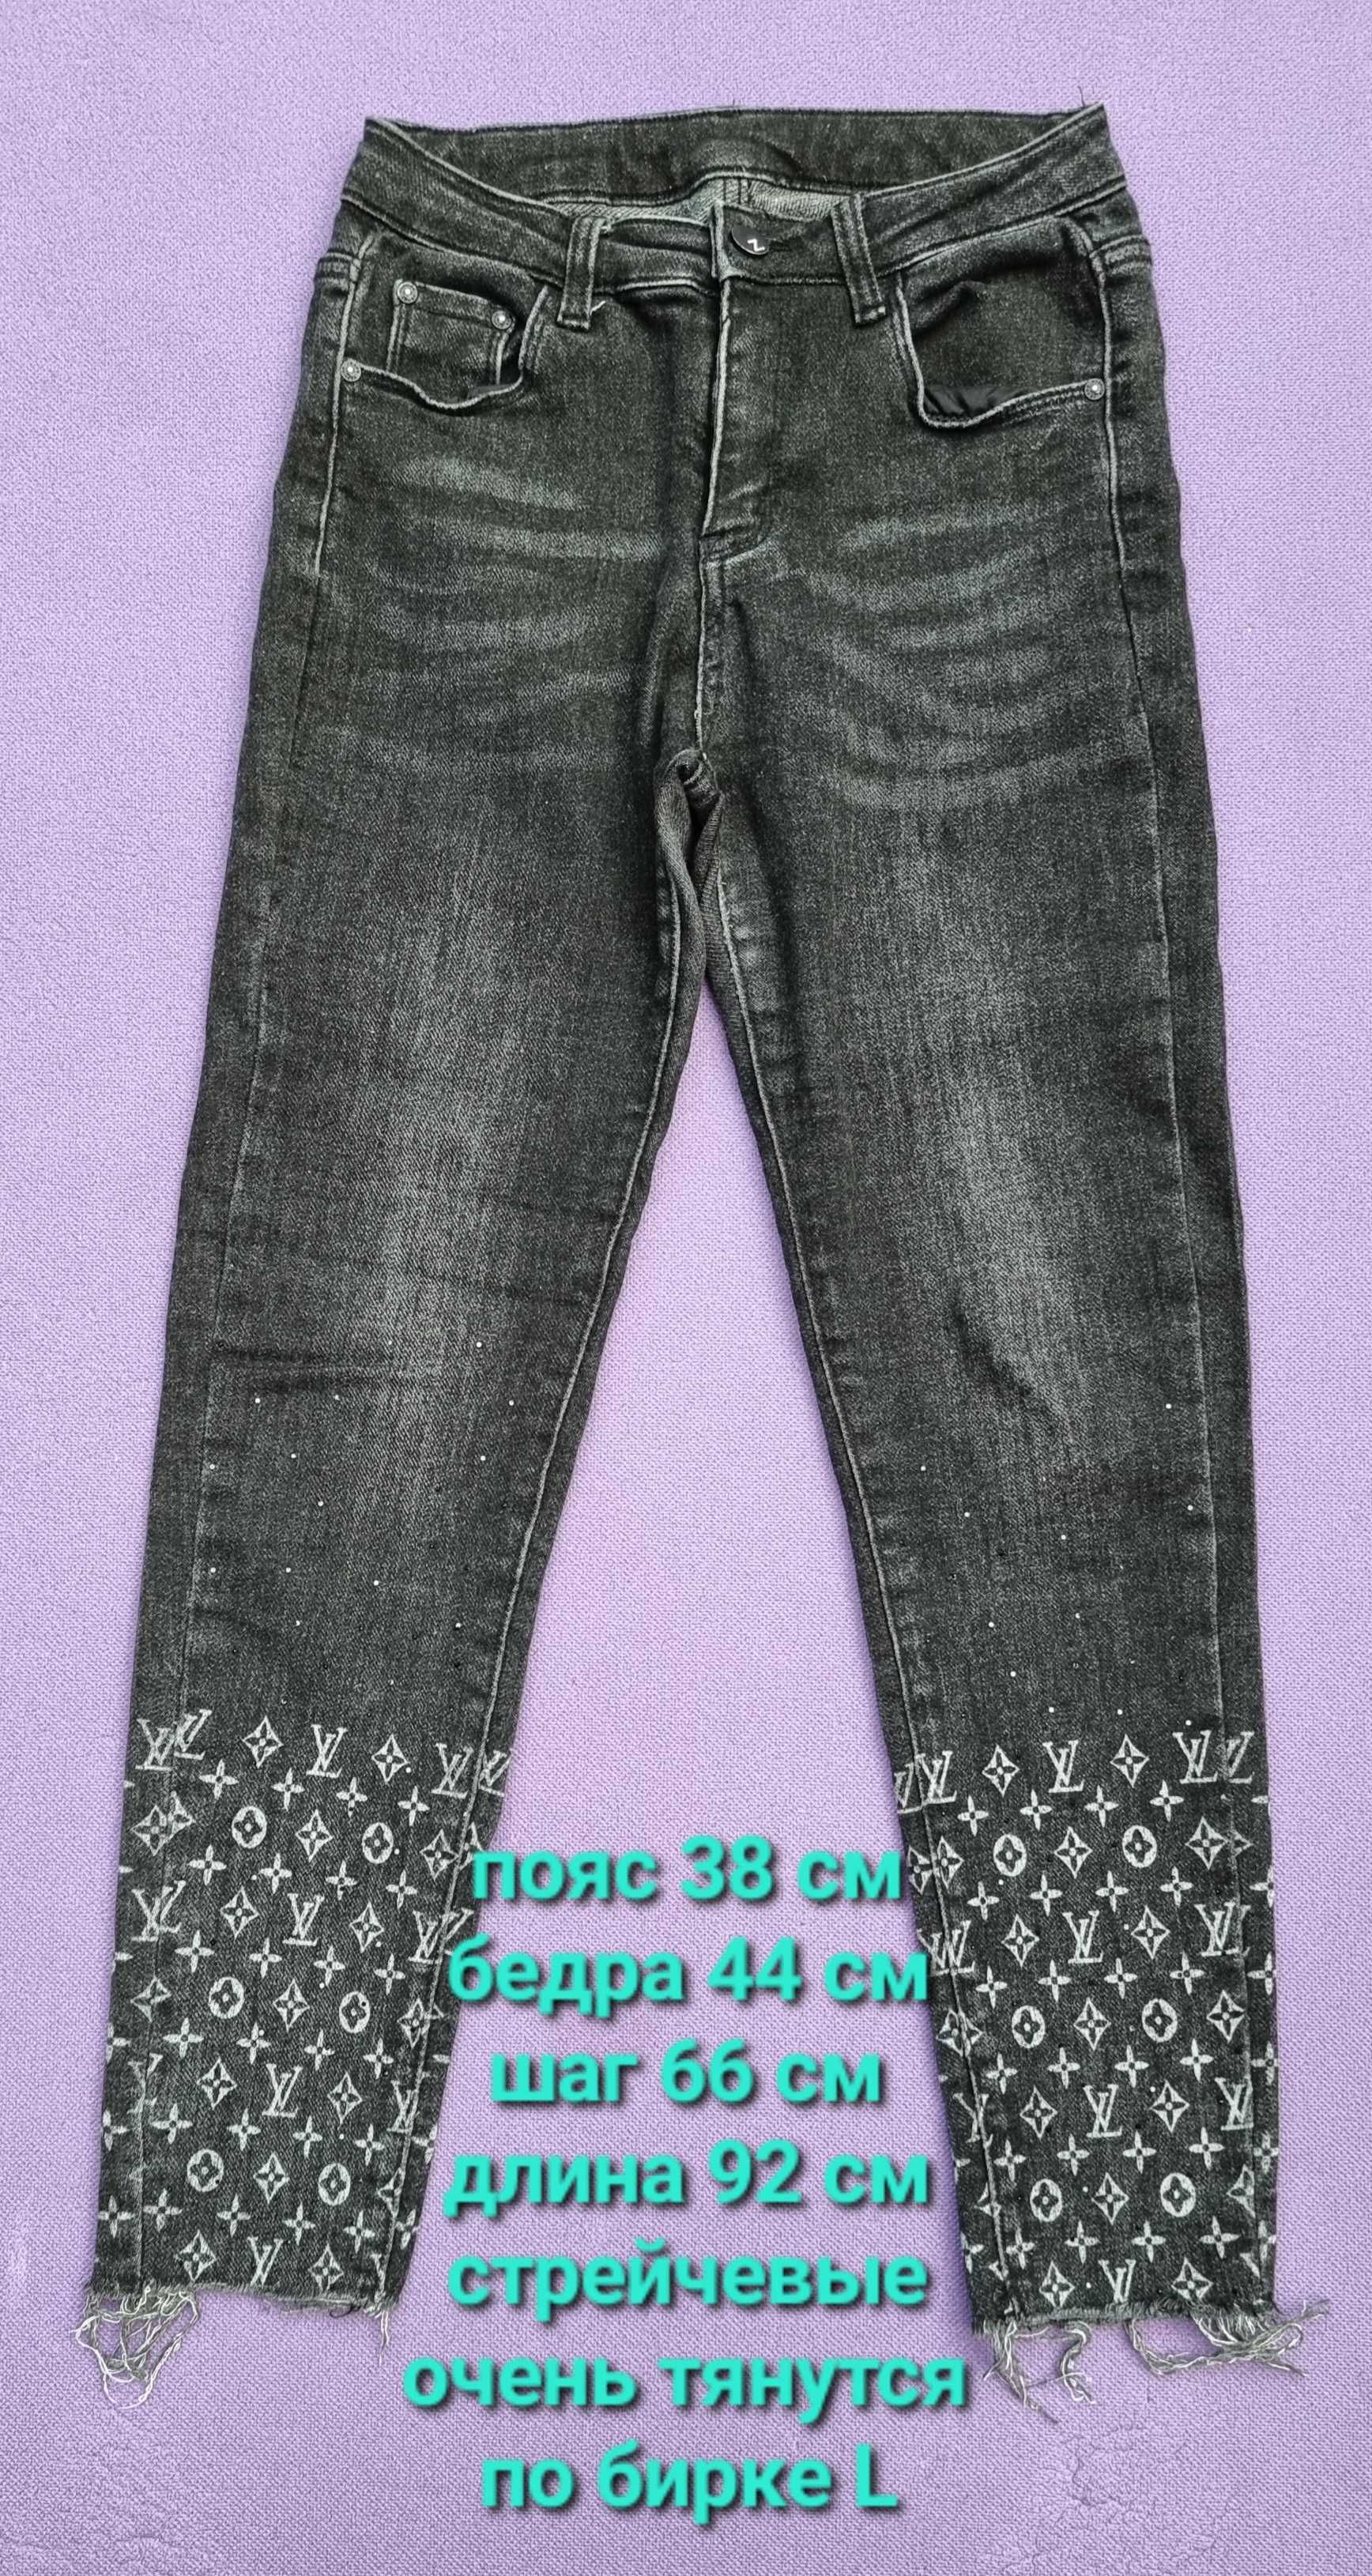 Штаны лосины джинсы черные для беременных 44 размер S-M б/у в идеале